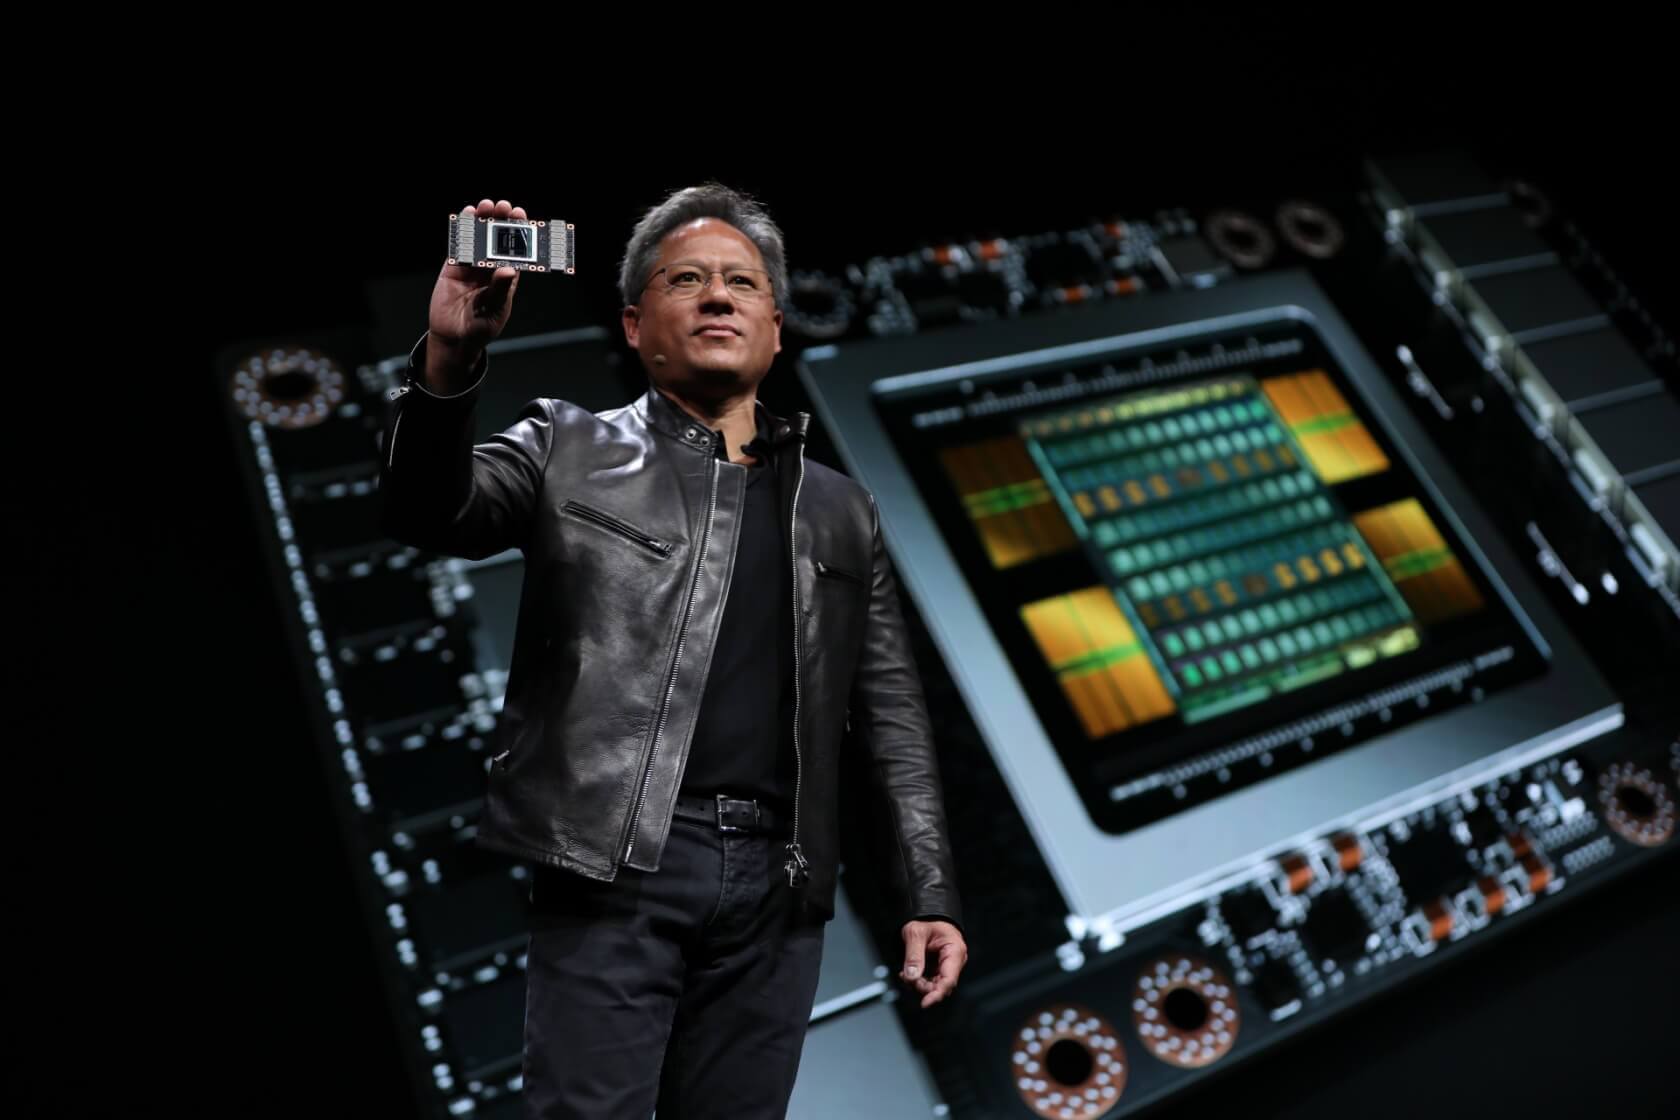 El desempeño estelar de Nvidia impulsa al CEO Jensen Huang al puesto 21 en la lista mundial de ricos